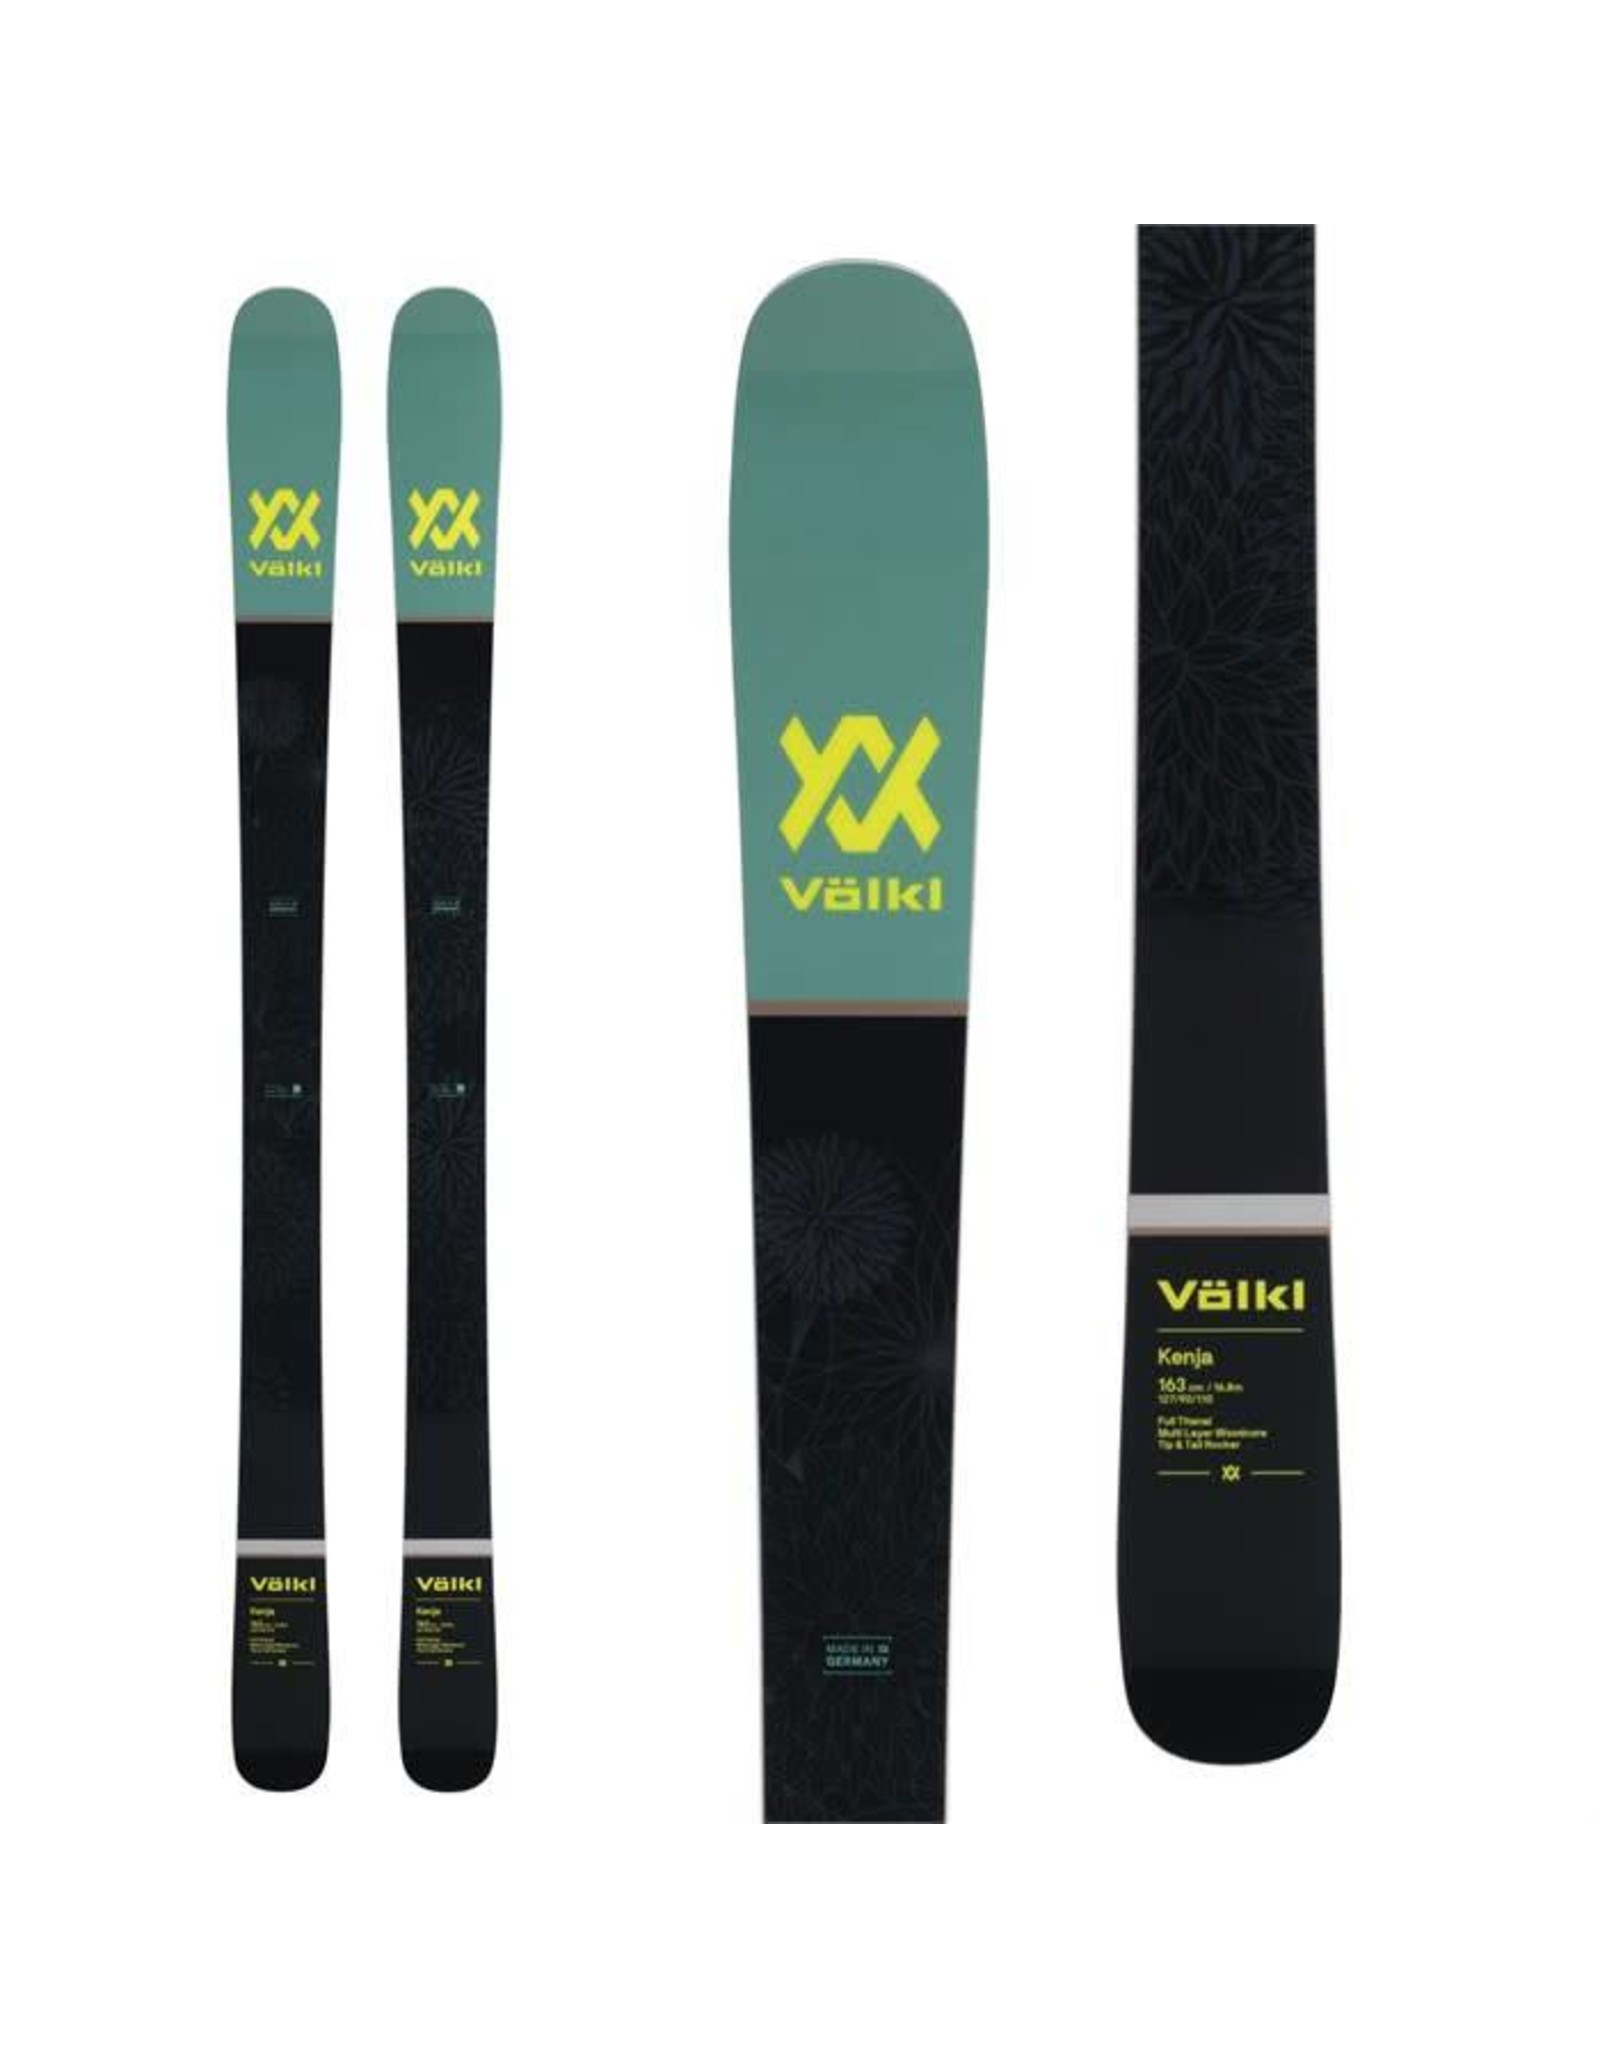 Völkl Volkl Kenja Women's Ski